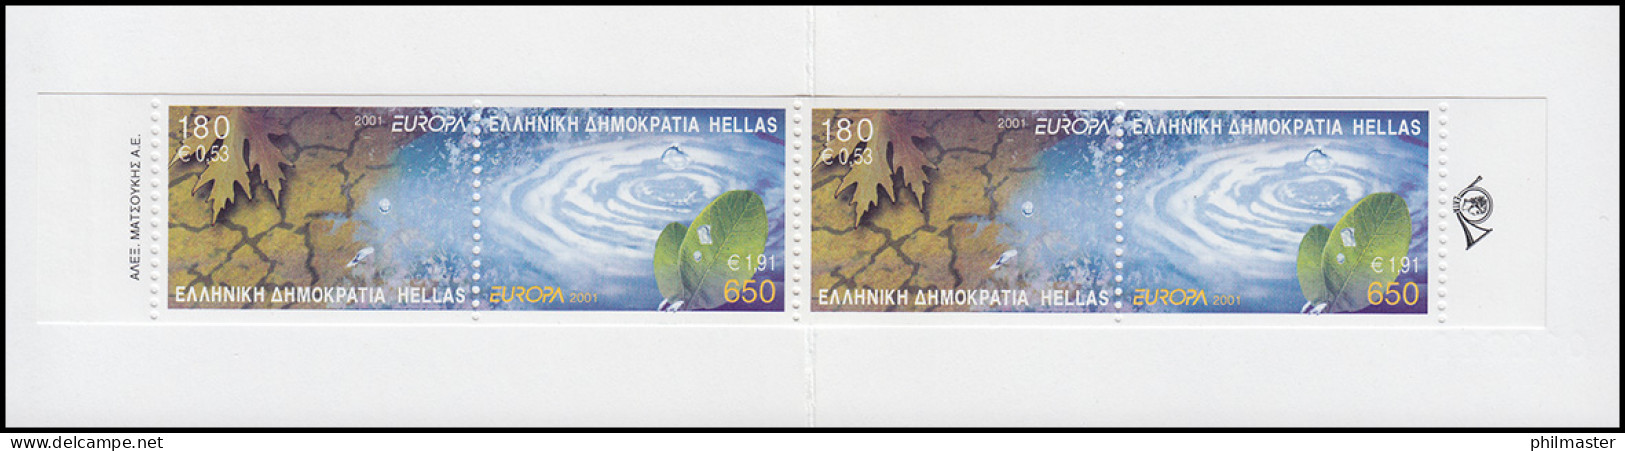 Griechenland Markenheftchen 23 Europa 2001, ** Postfrisch - Booklets